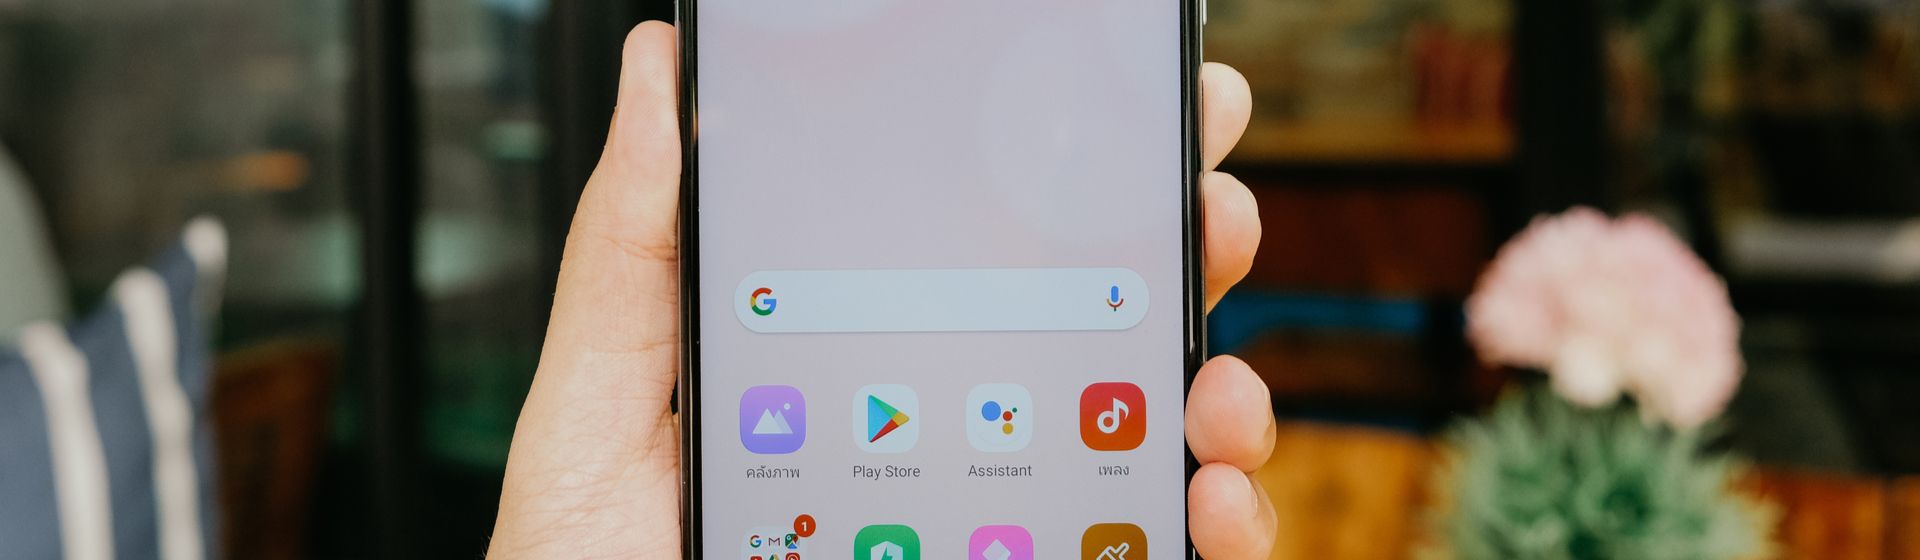 Capa do post: Redmi Note 9 Pro: confira a ficha técnica do celular Xiaomi